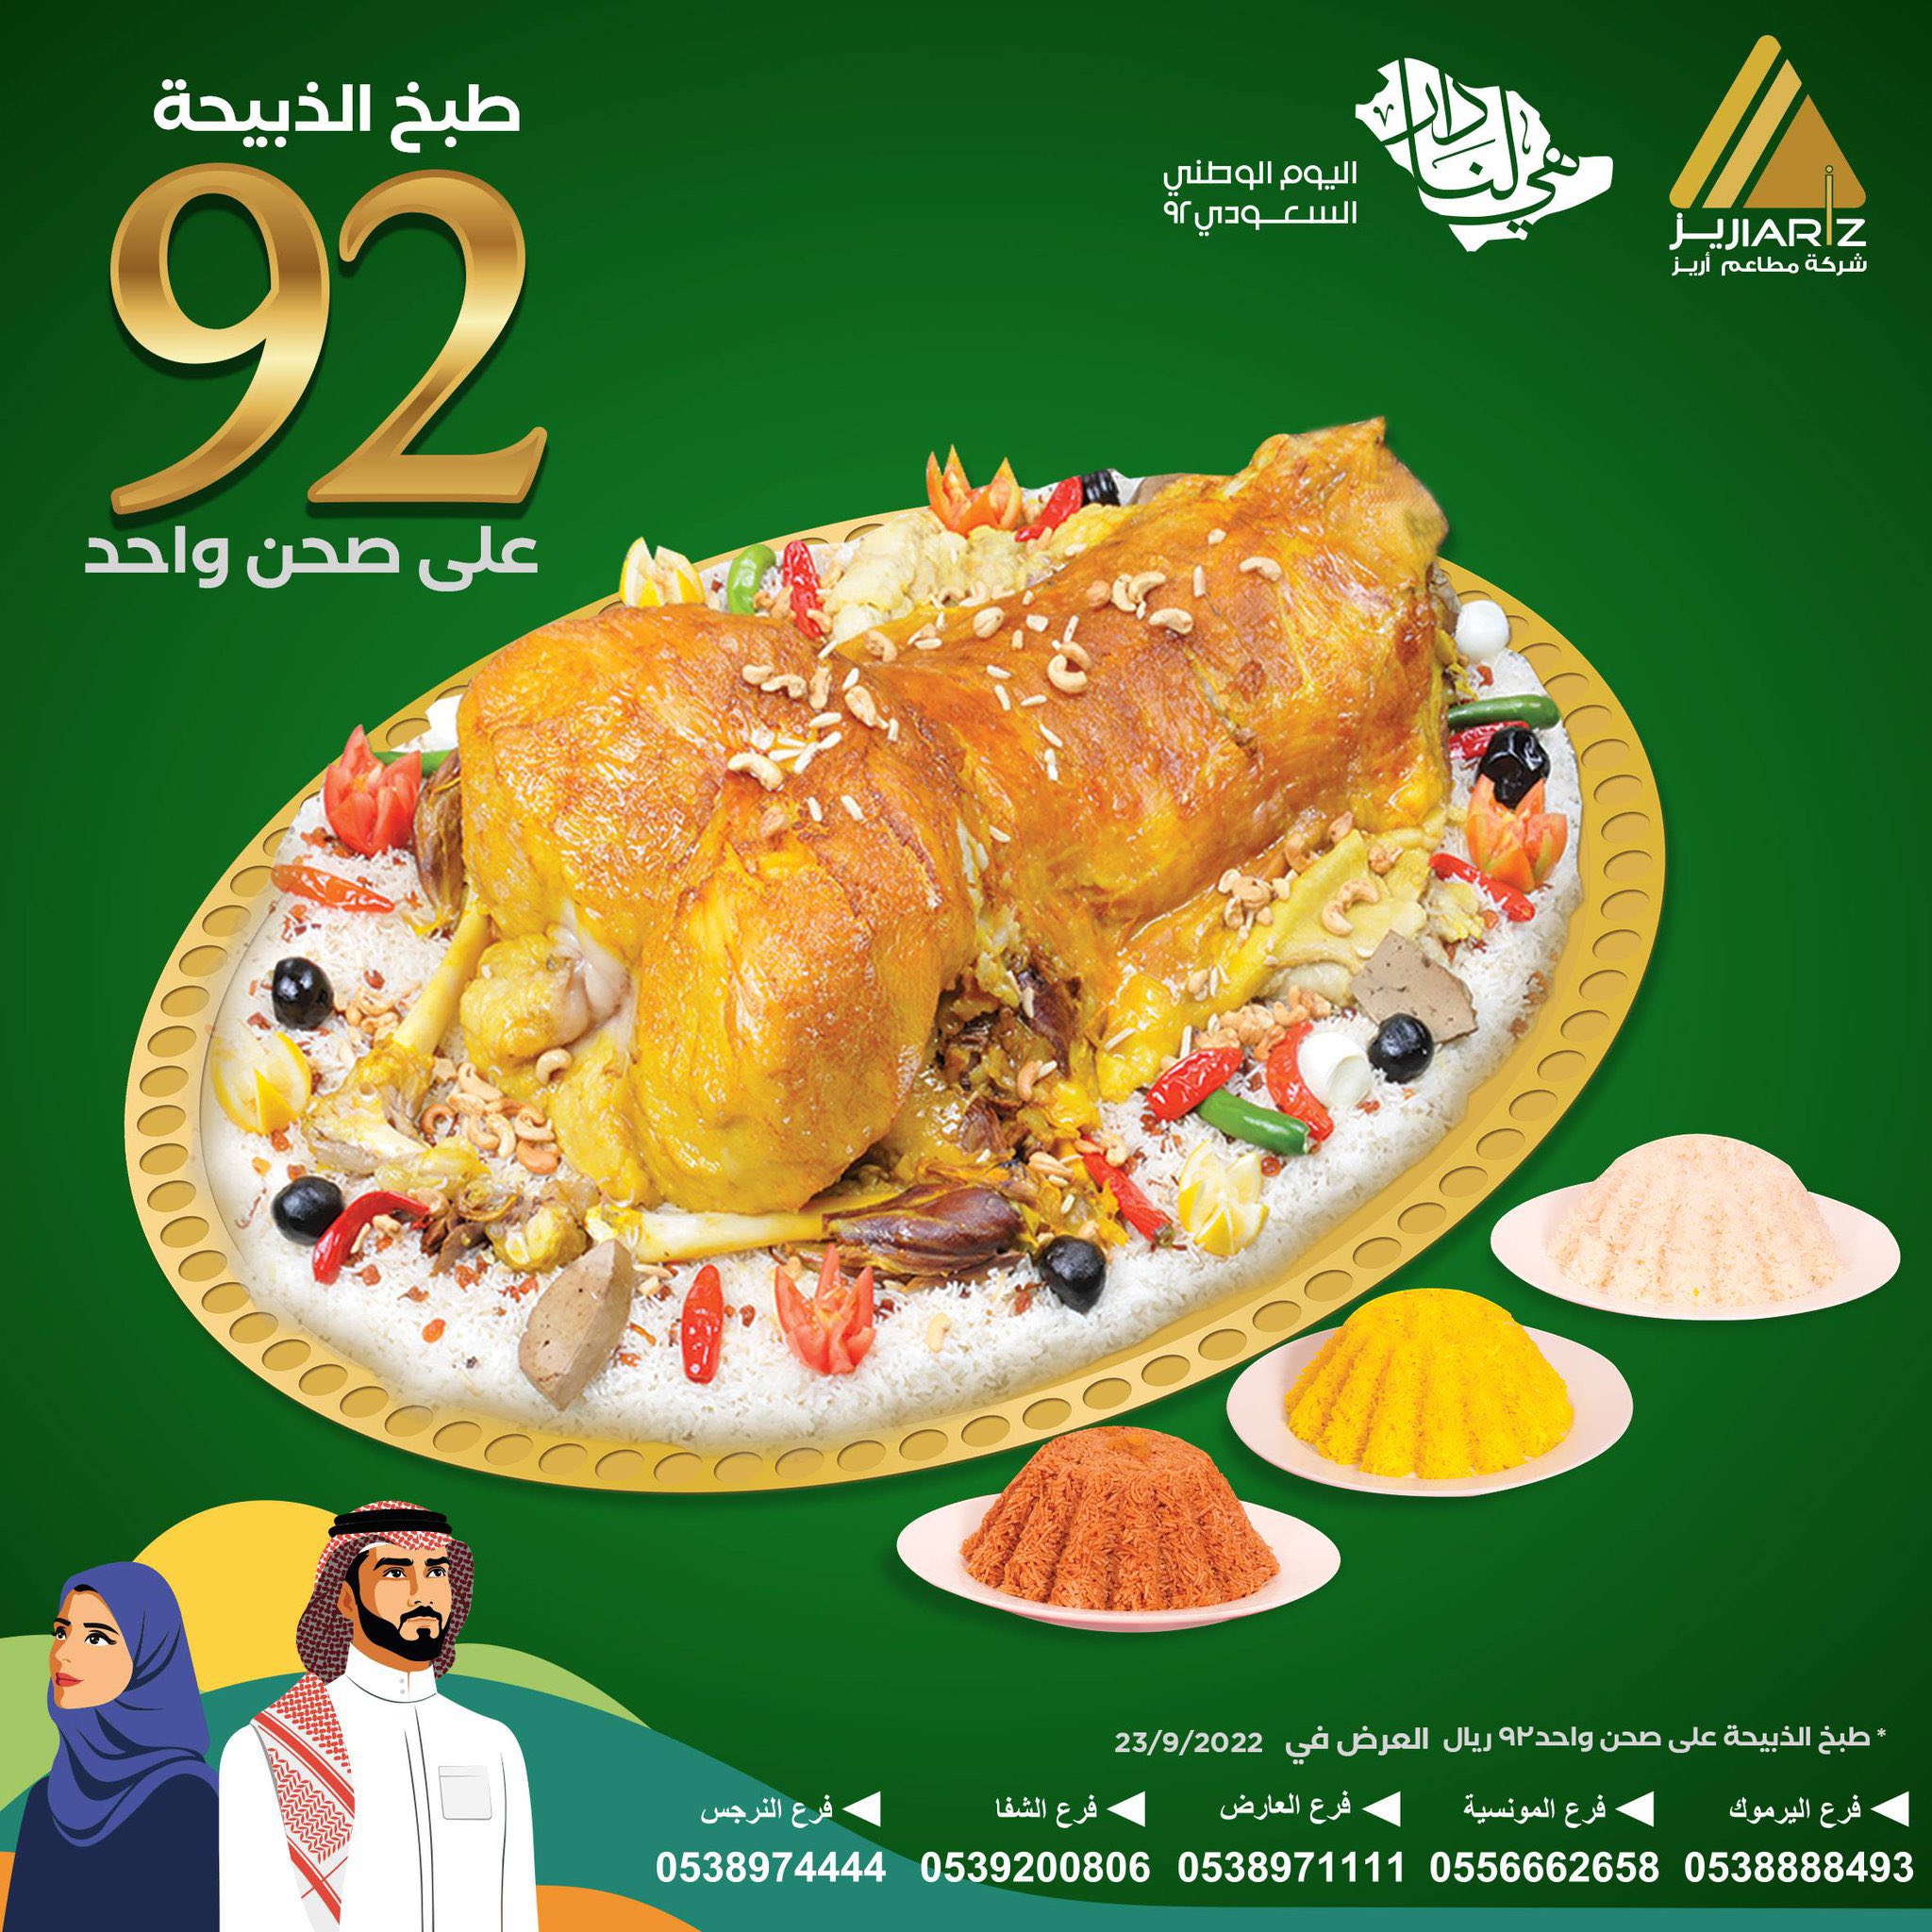 FdQK9WyXwAMFUR 2 - عروض اليوم الوطني 92 : عروض مطاعم السعودية (محدث بالعروض الجديدة)